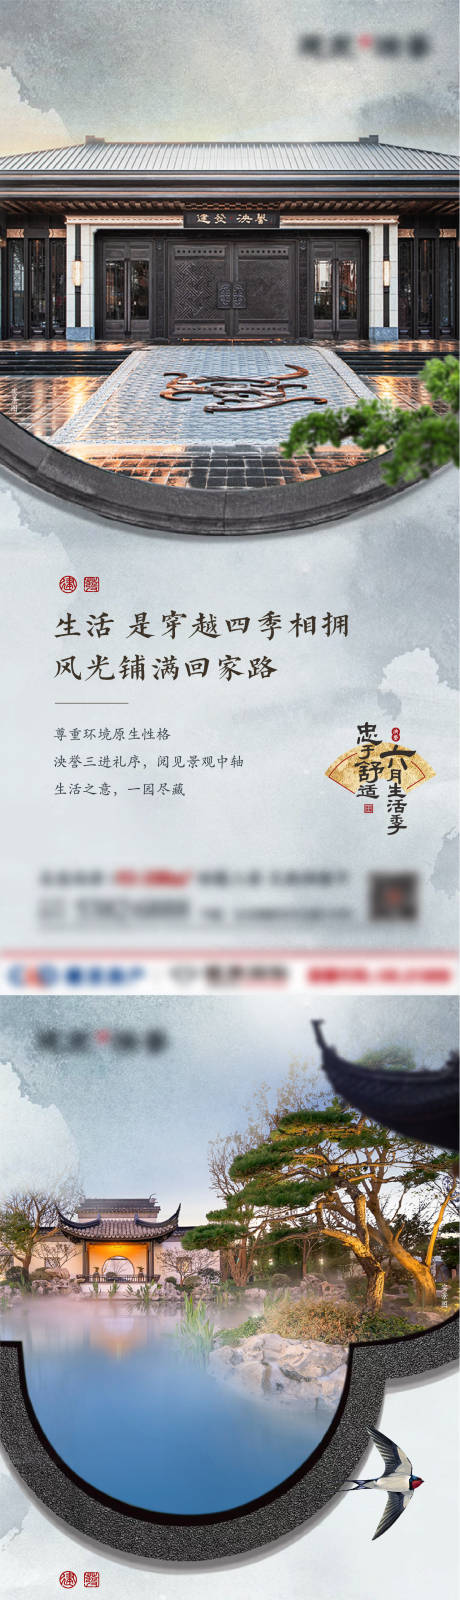 中式园林价值点系列海报